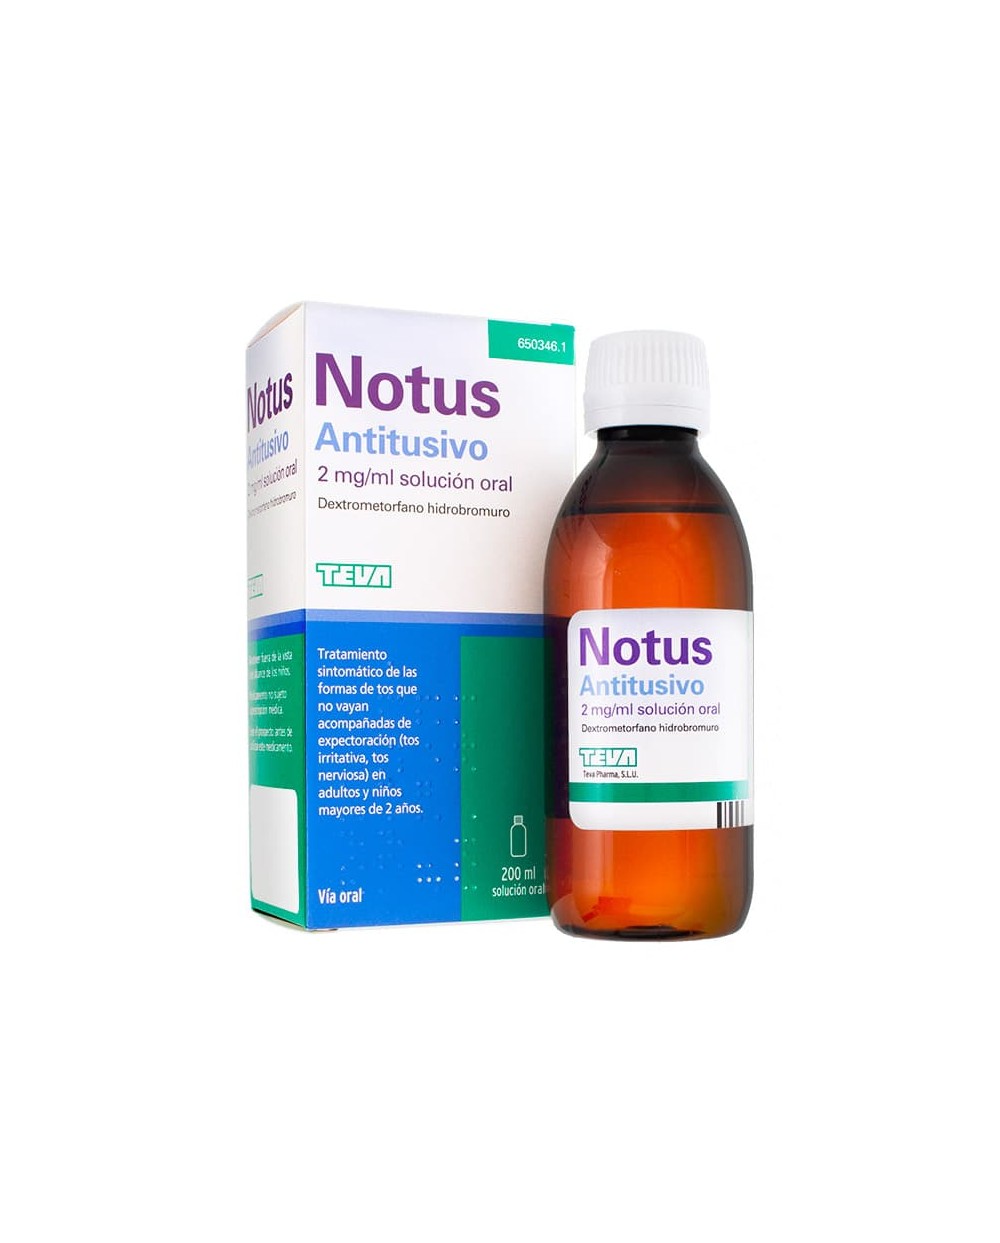 Notus Antitusivo 2 mg/ml Solución Oral, 200 ml